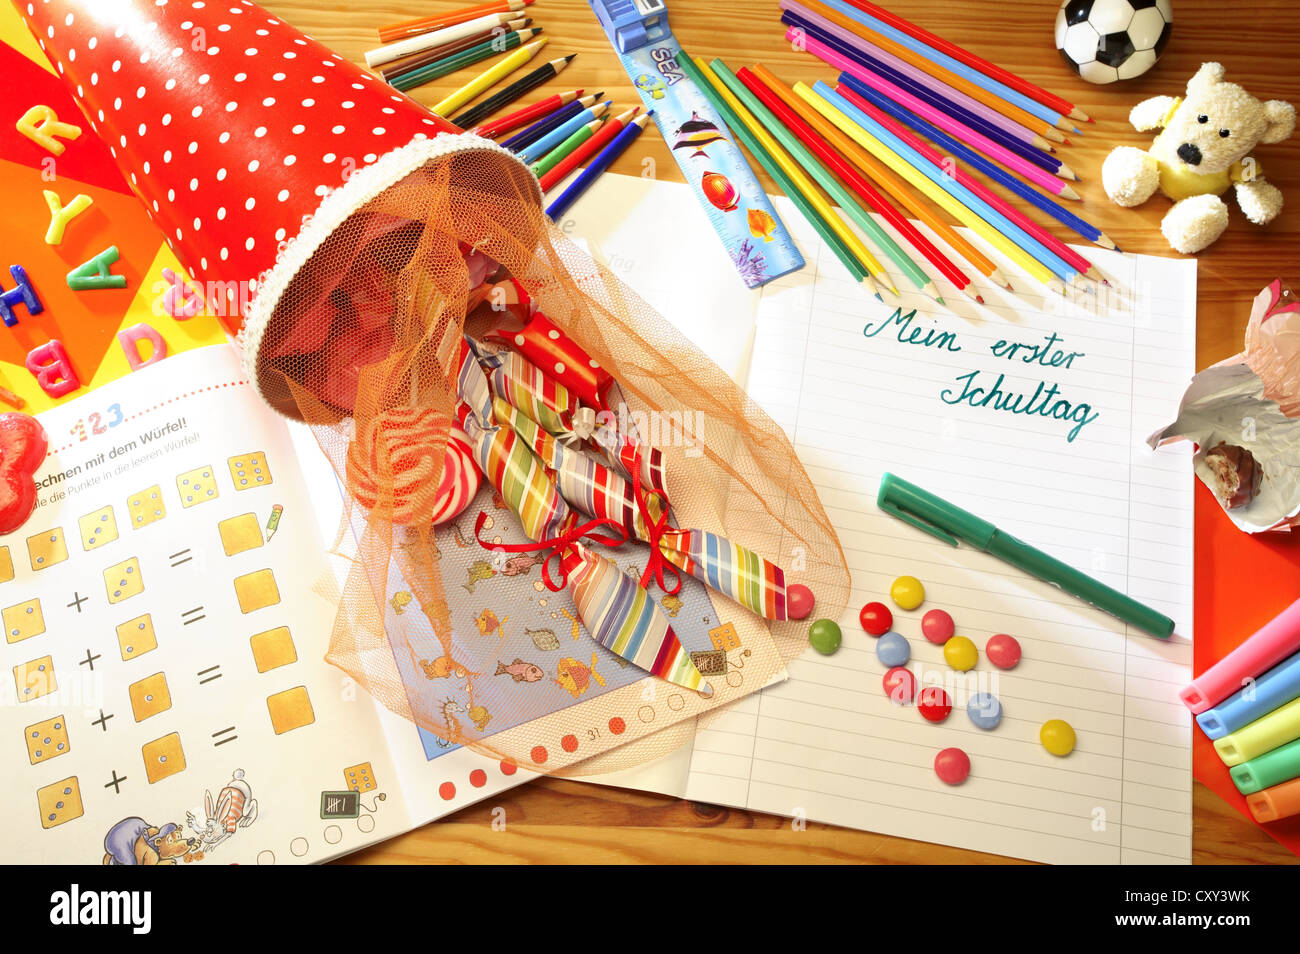 Schultuete o scuola cono riempito con doni e dolciumi accanto a matite colorate e un notebook con la voce Mein erster Foto Stock